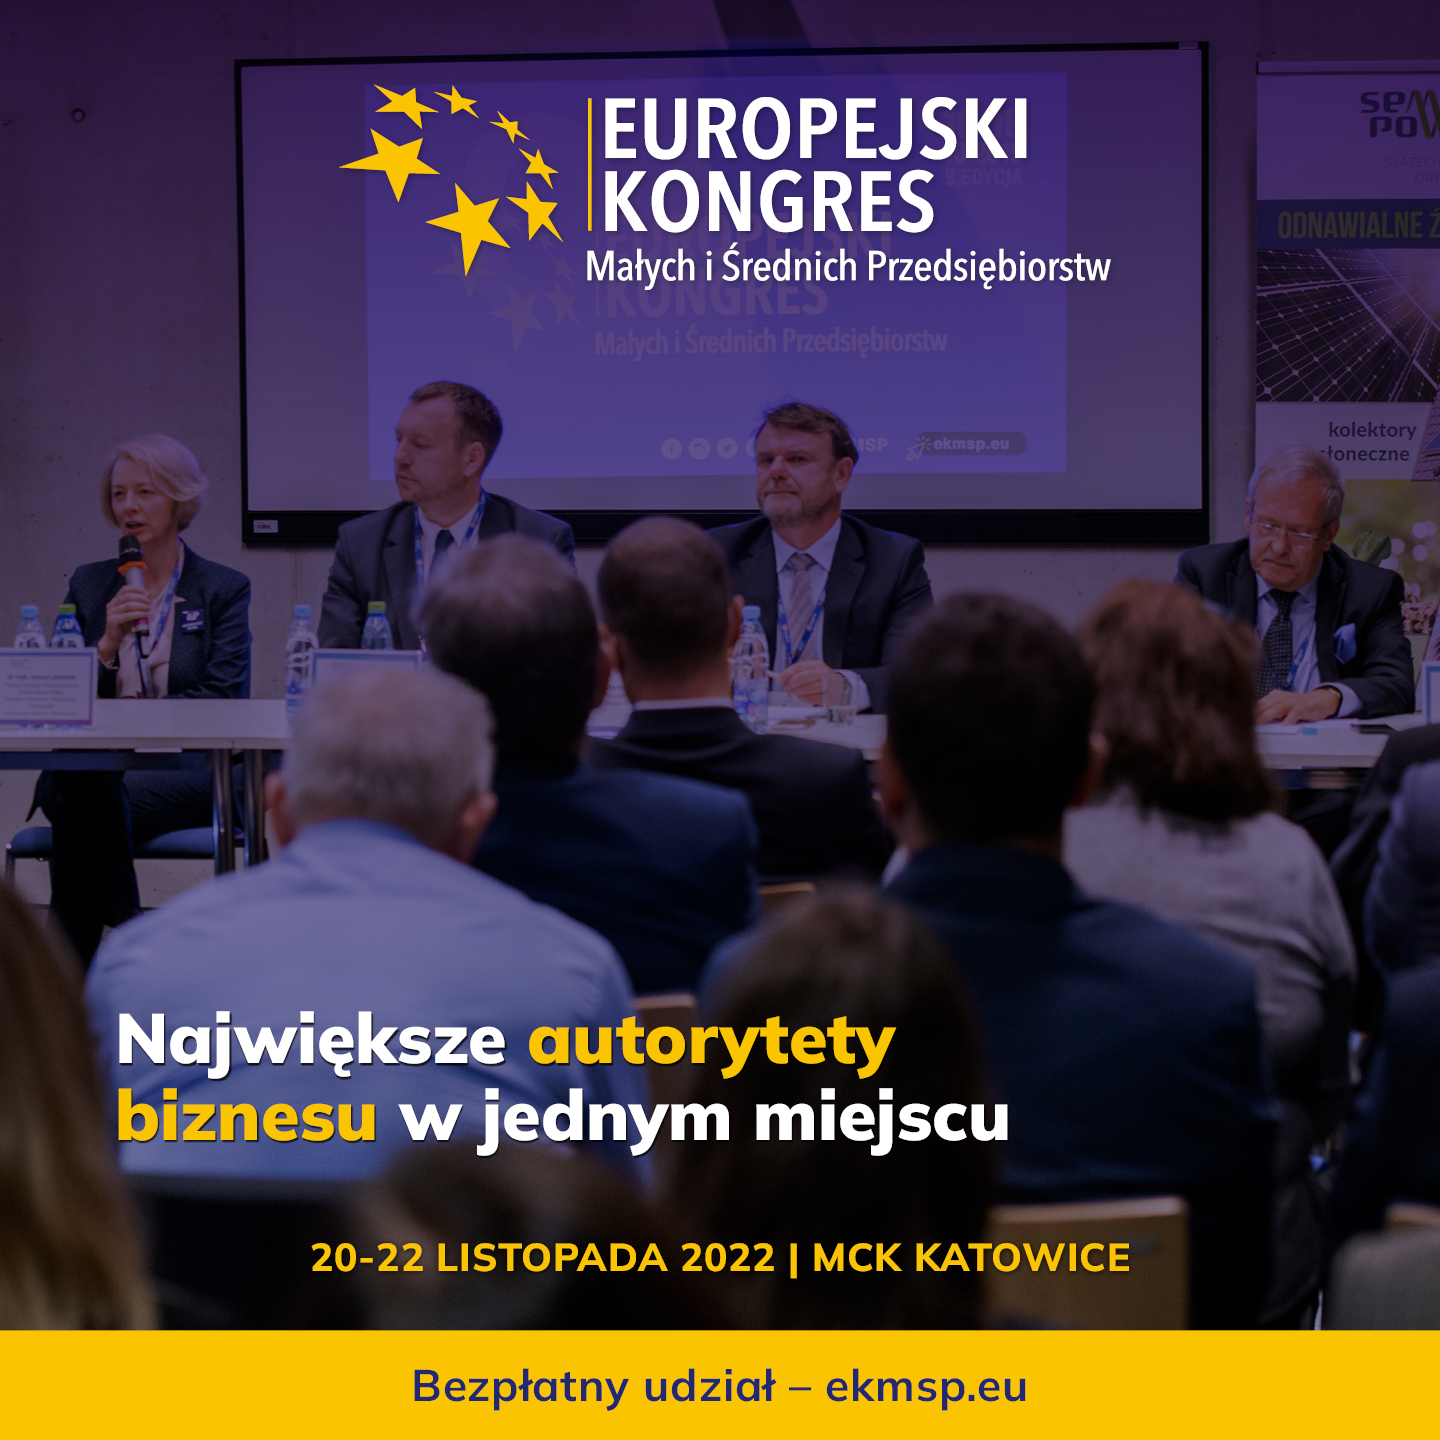 Europejski Kongres Małych i Średnich Przedsiębiorstw, 20-22 listopada 2022_Katowice